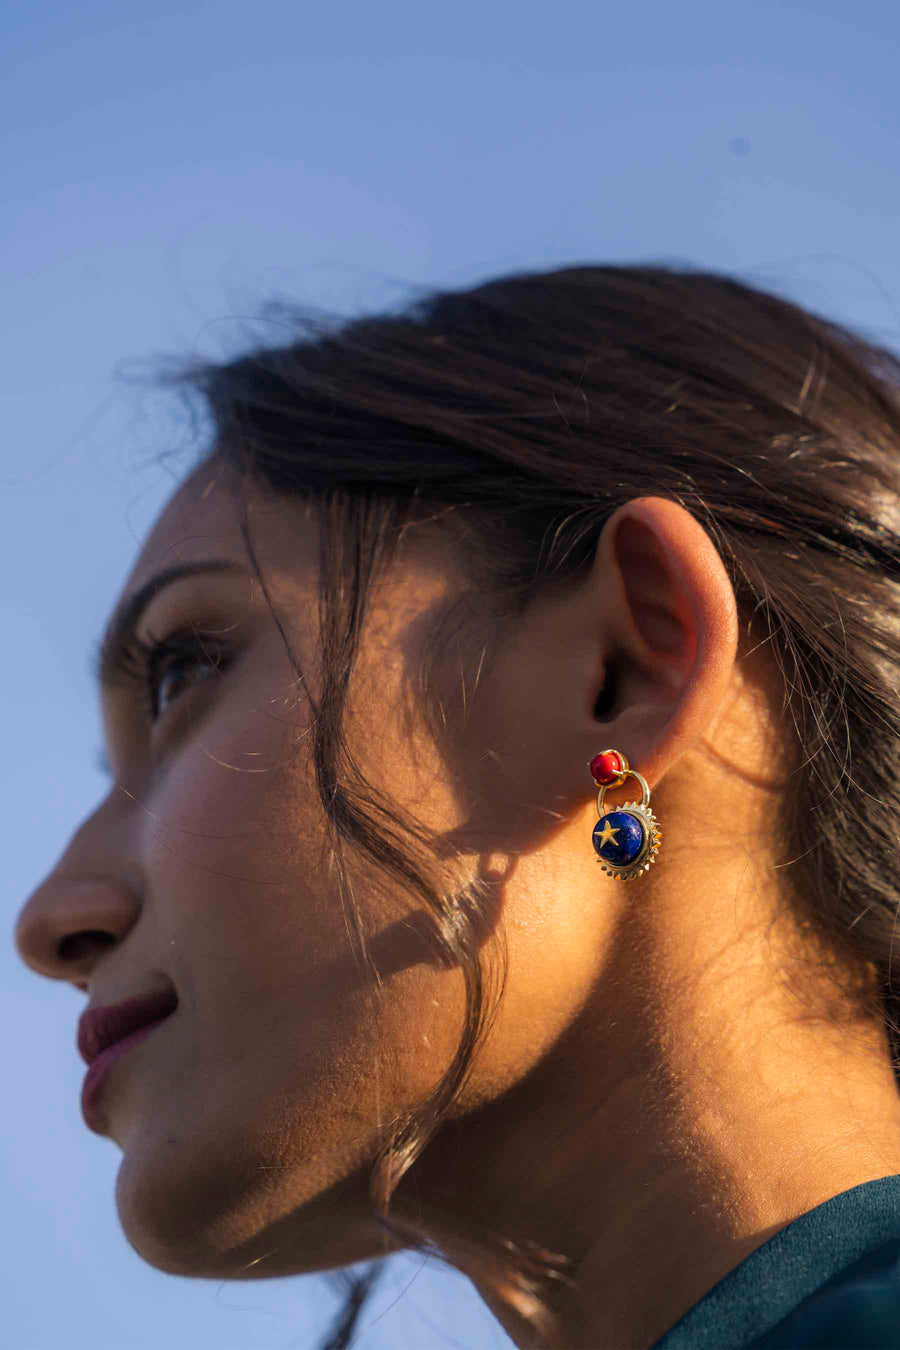 Stars Aligned Earrings